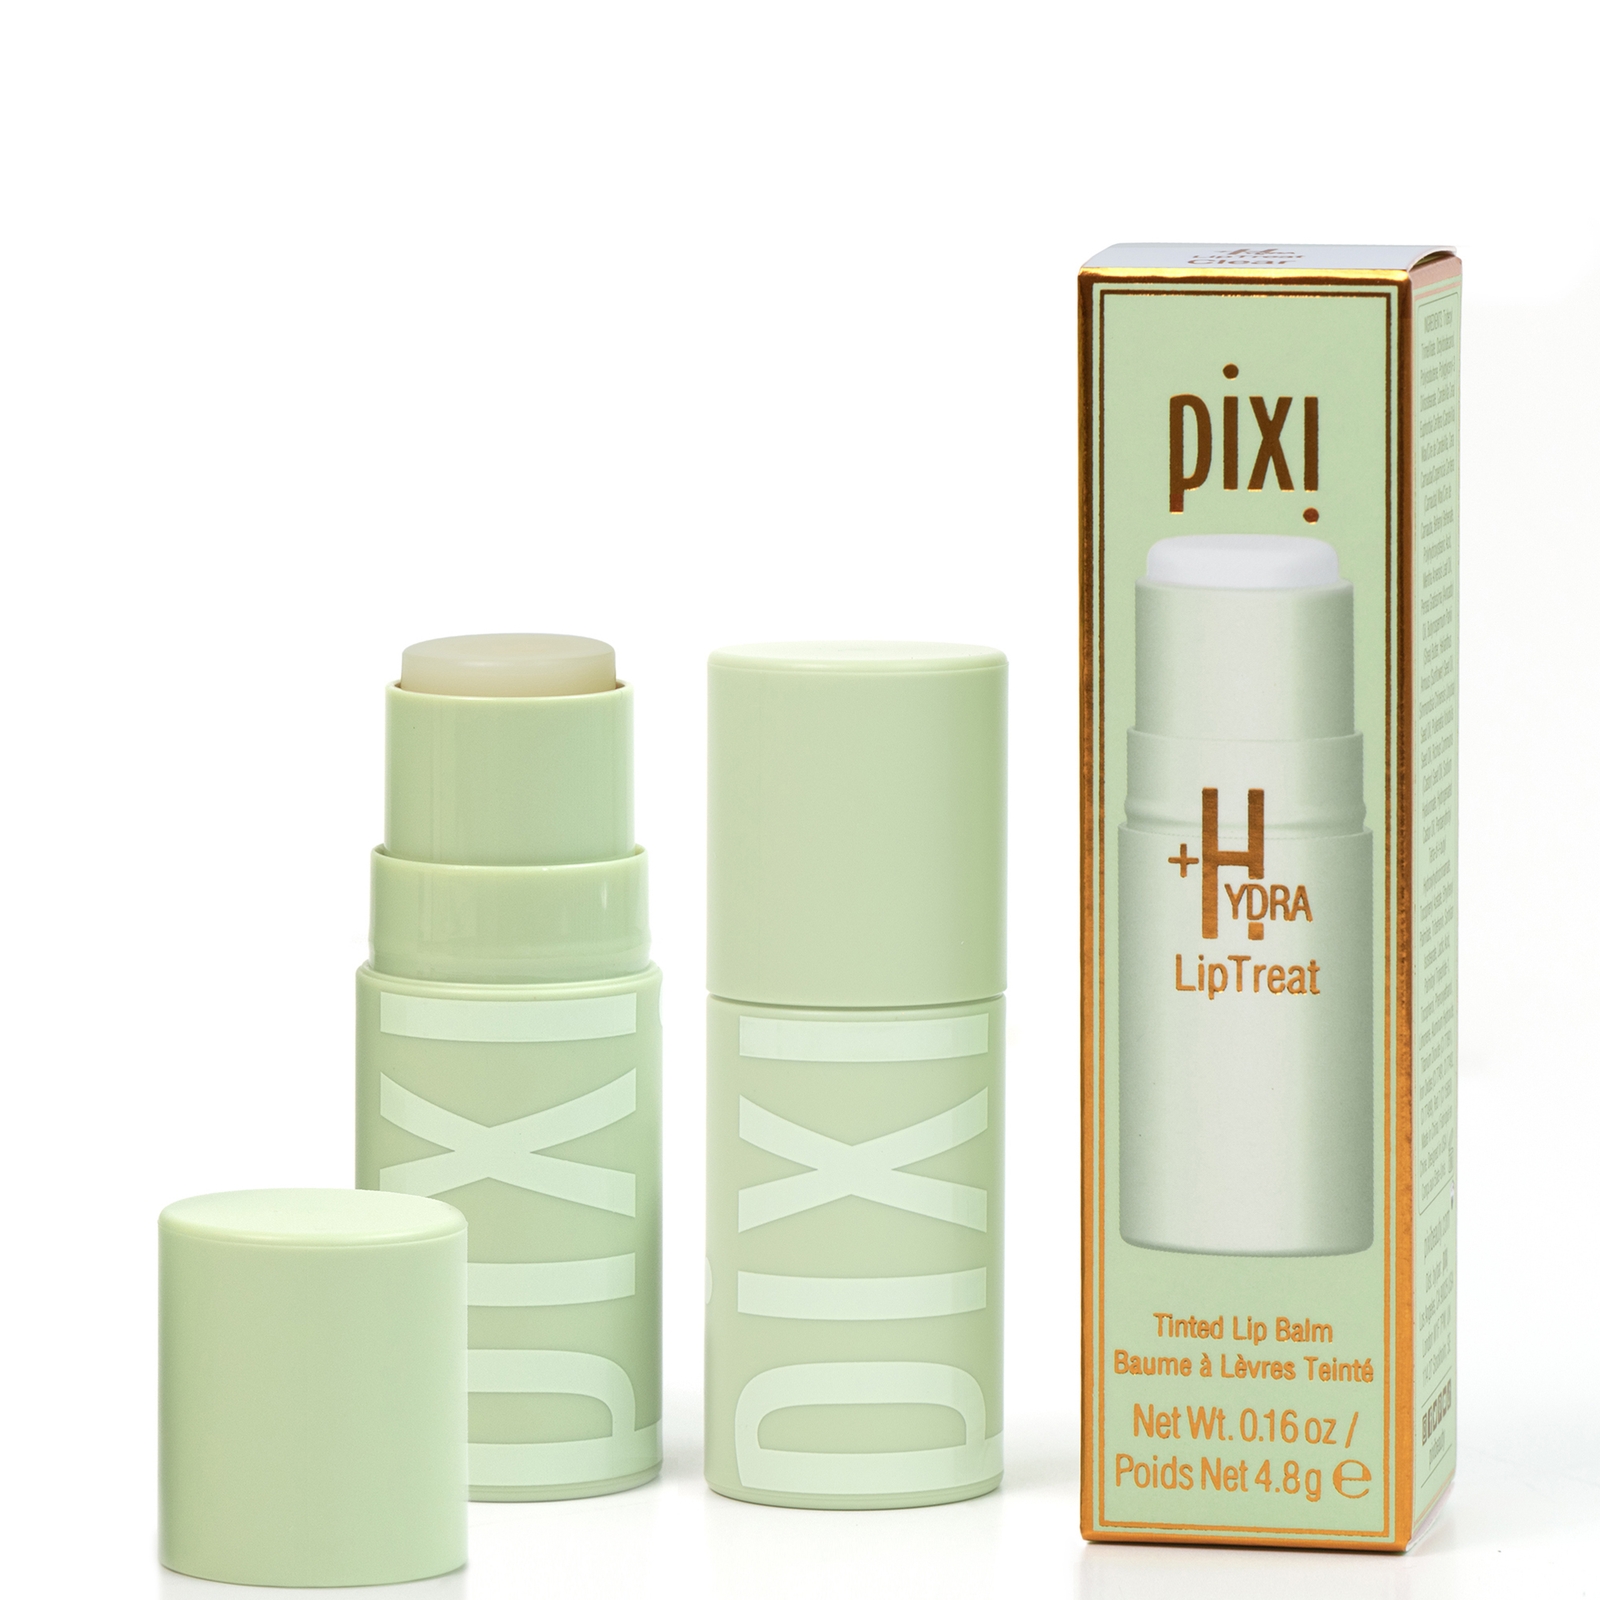 PIXI +Hydra LipTreat Balm 4.8g (Various Shades) - Clear